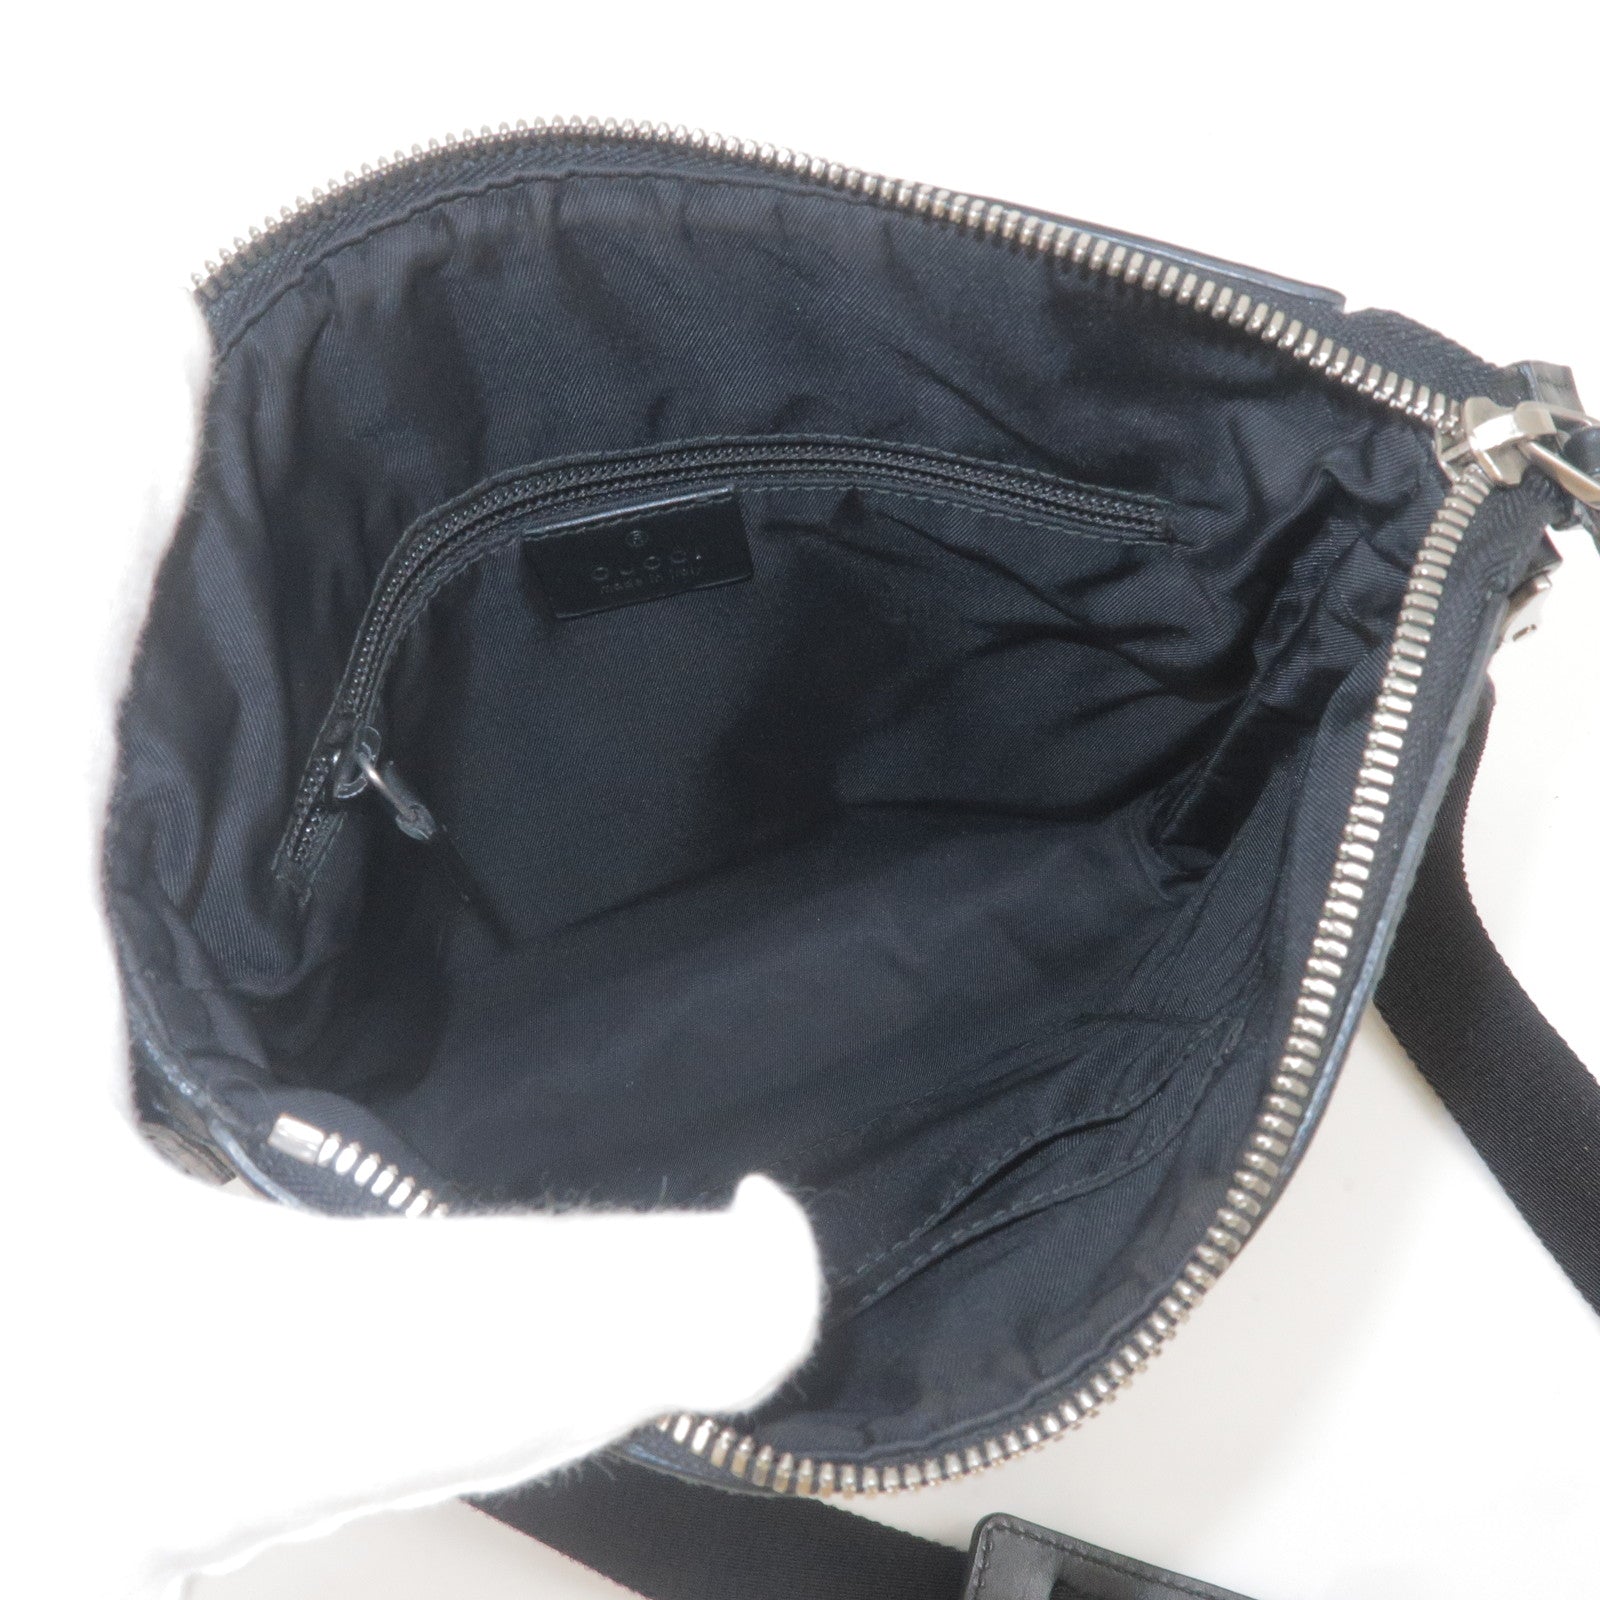 Supreme Black Nylon Shoulder Bag